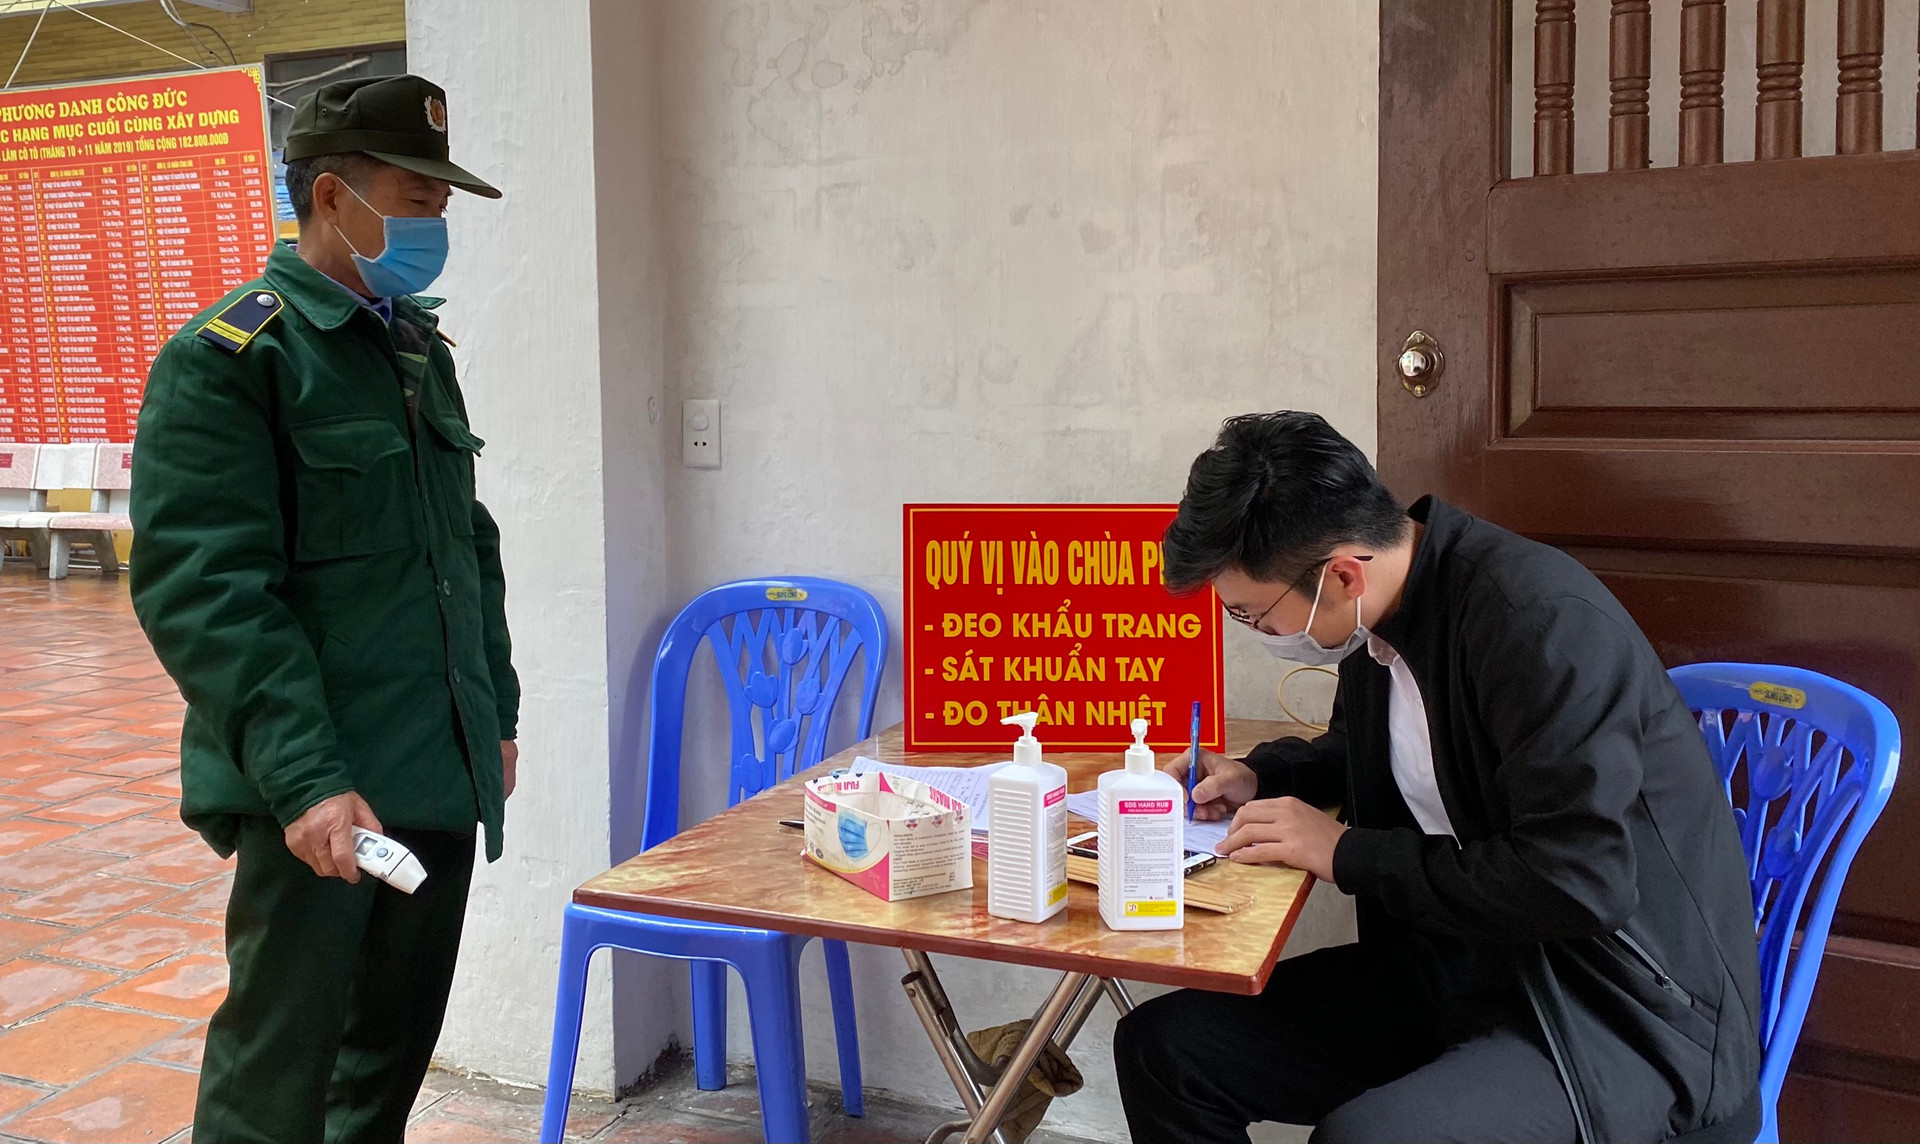 tỉnh Quảng Ninh quyết định về việc thí điểm mở lại các hoạt động du lịch, dịch vụ đến ngày 15/3 cho phép cơ sở dịch vụ, du lịch, các cơ sở tín ngưỡng tôn giáo và các cơ sở dịch vụ khác trên địa bàn hoạt động trở lại trong trạng thái bình thường mới